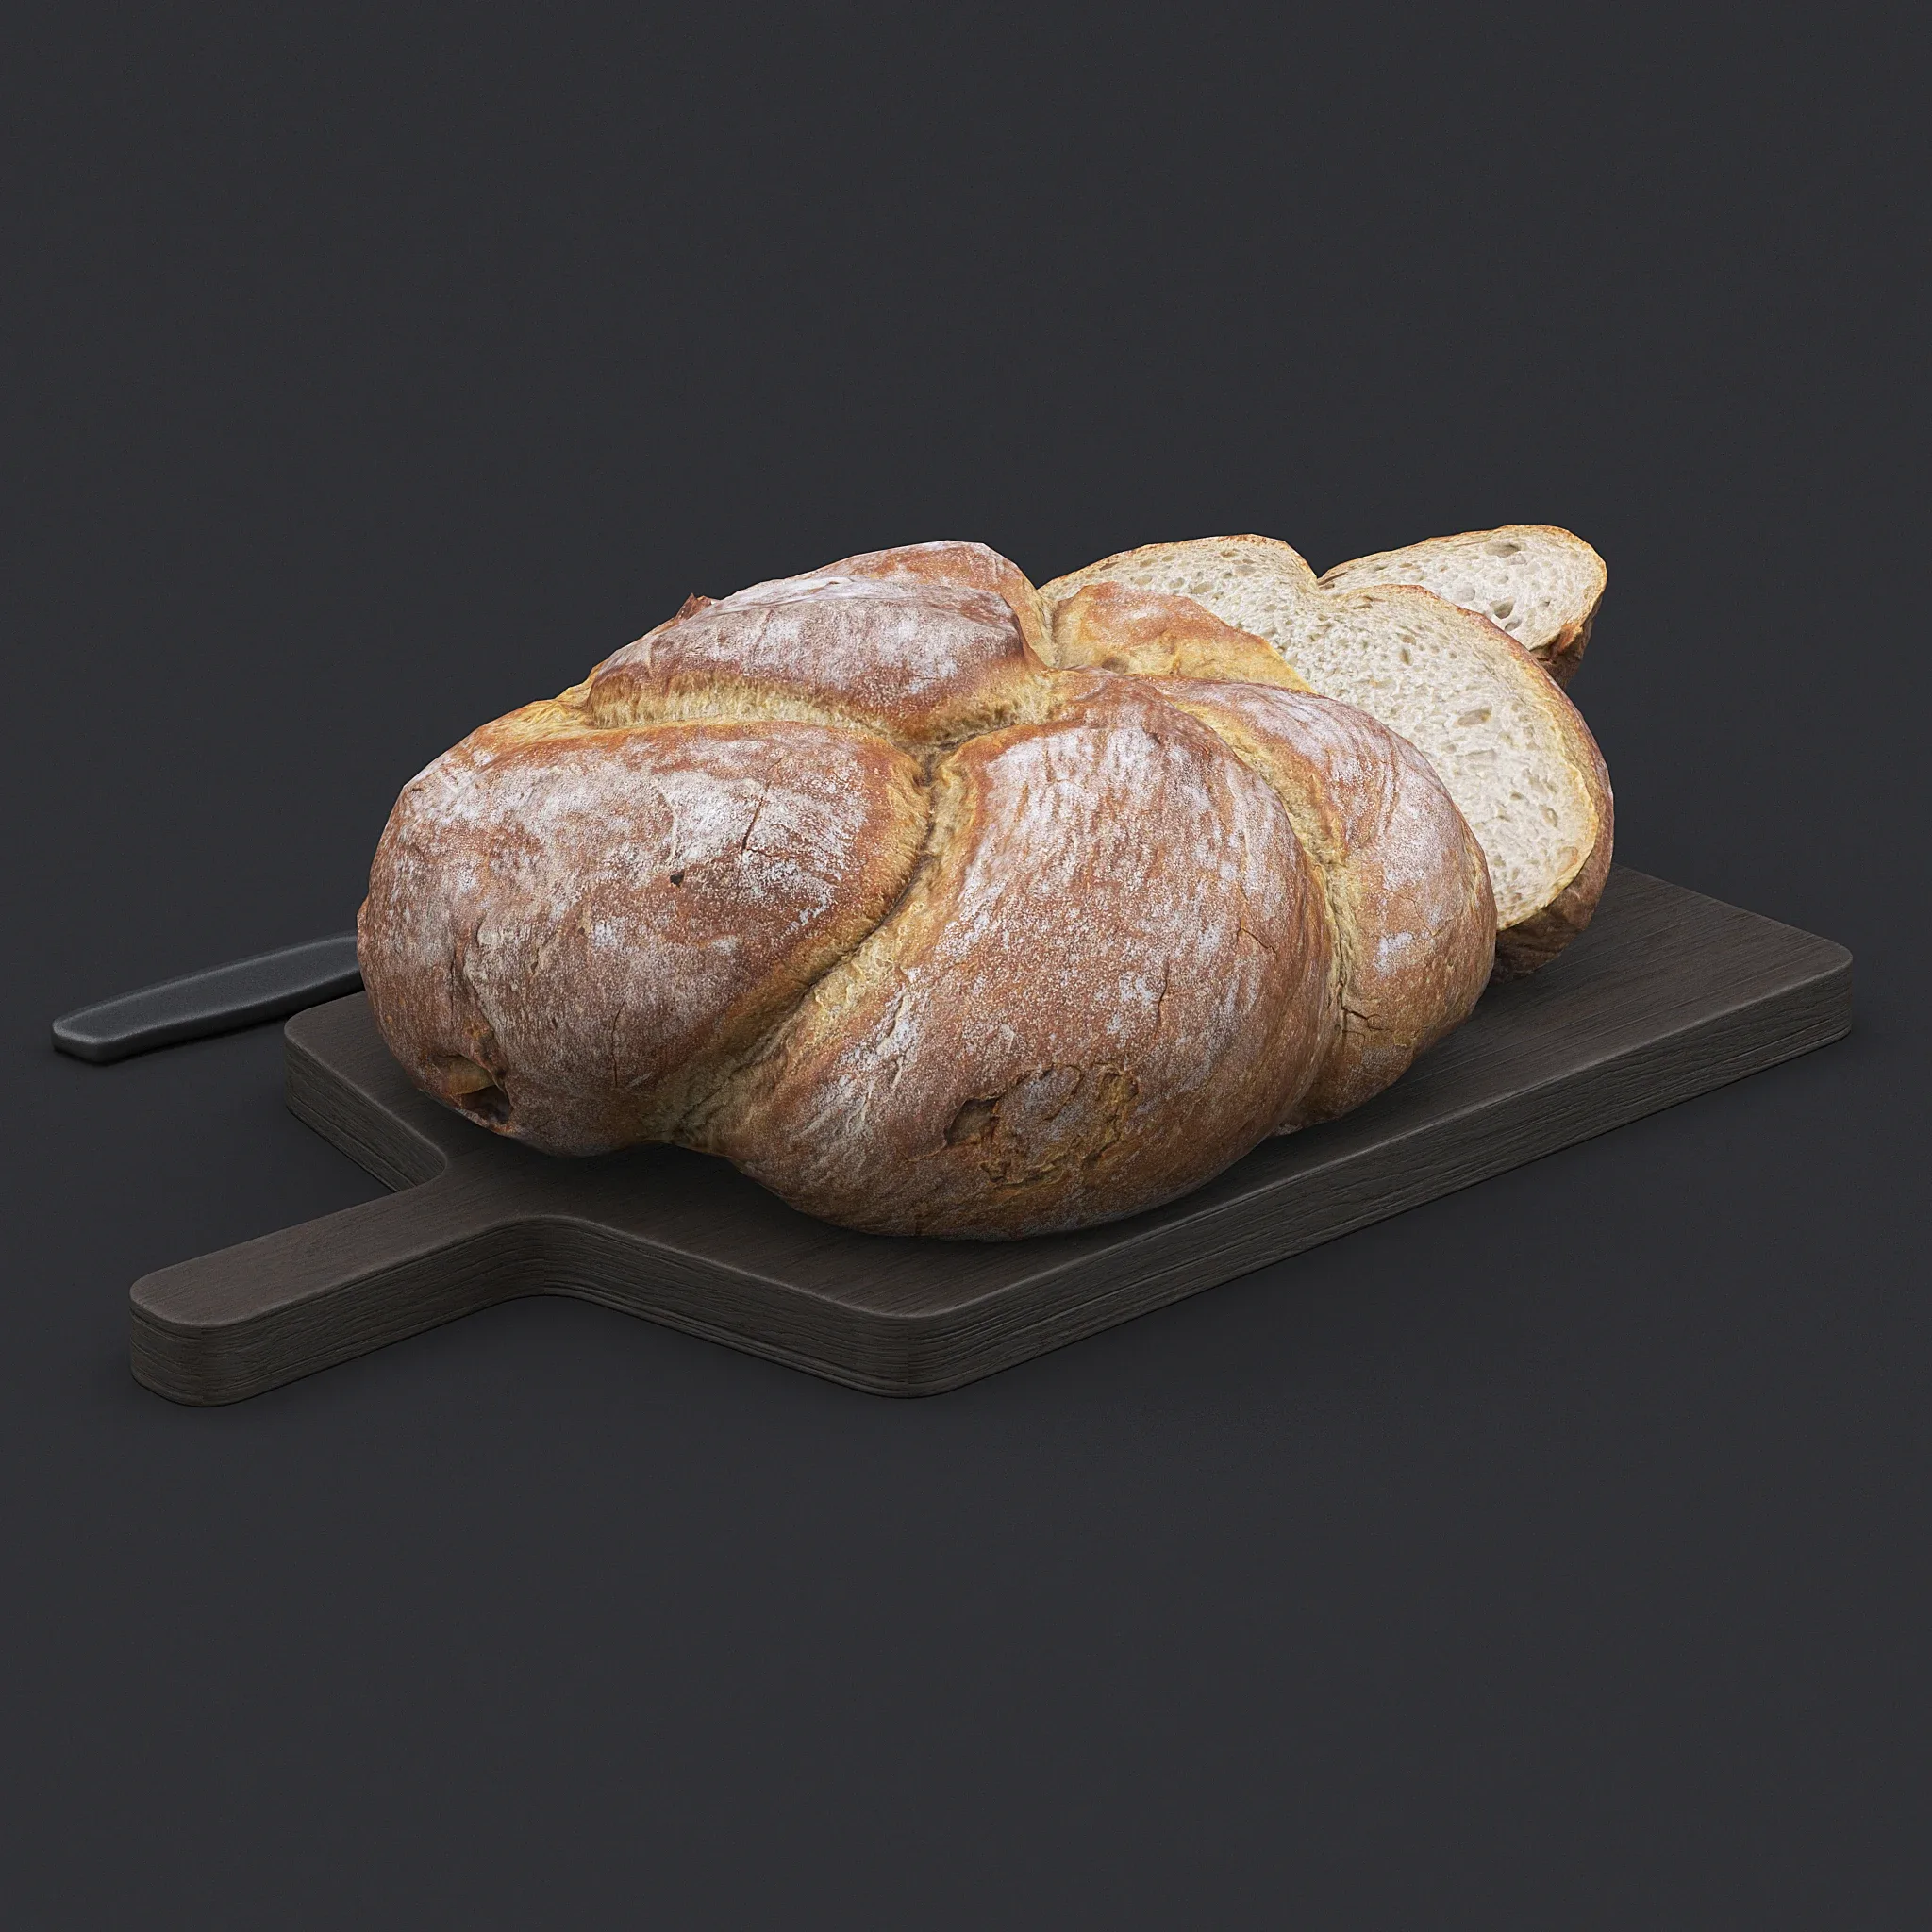 Bread Board II